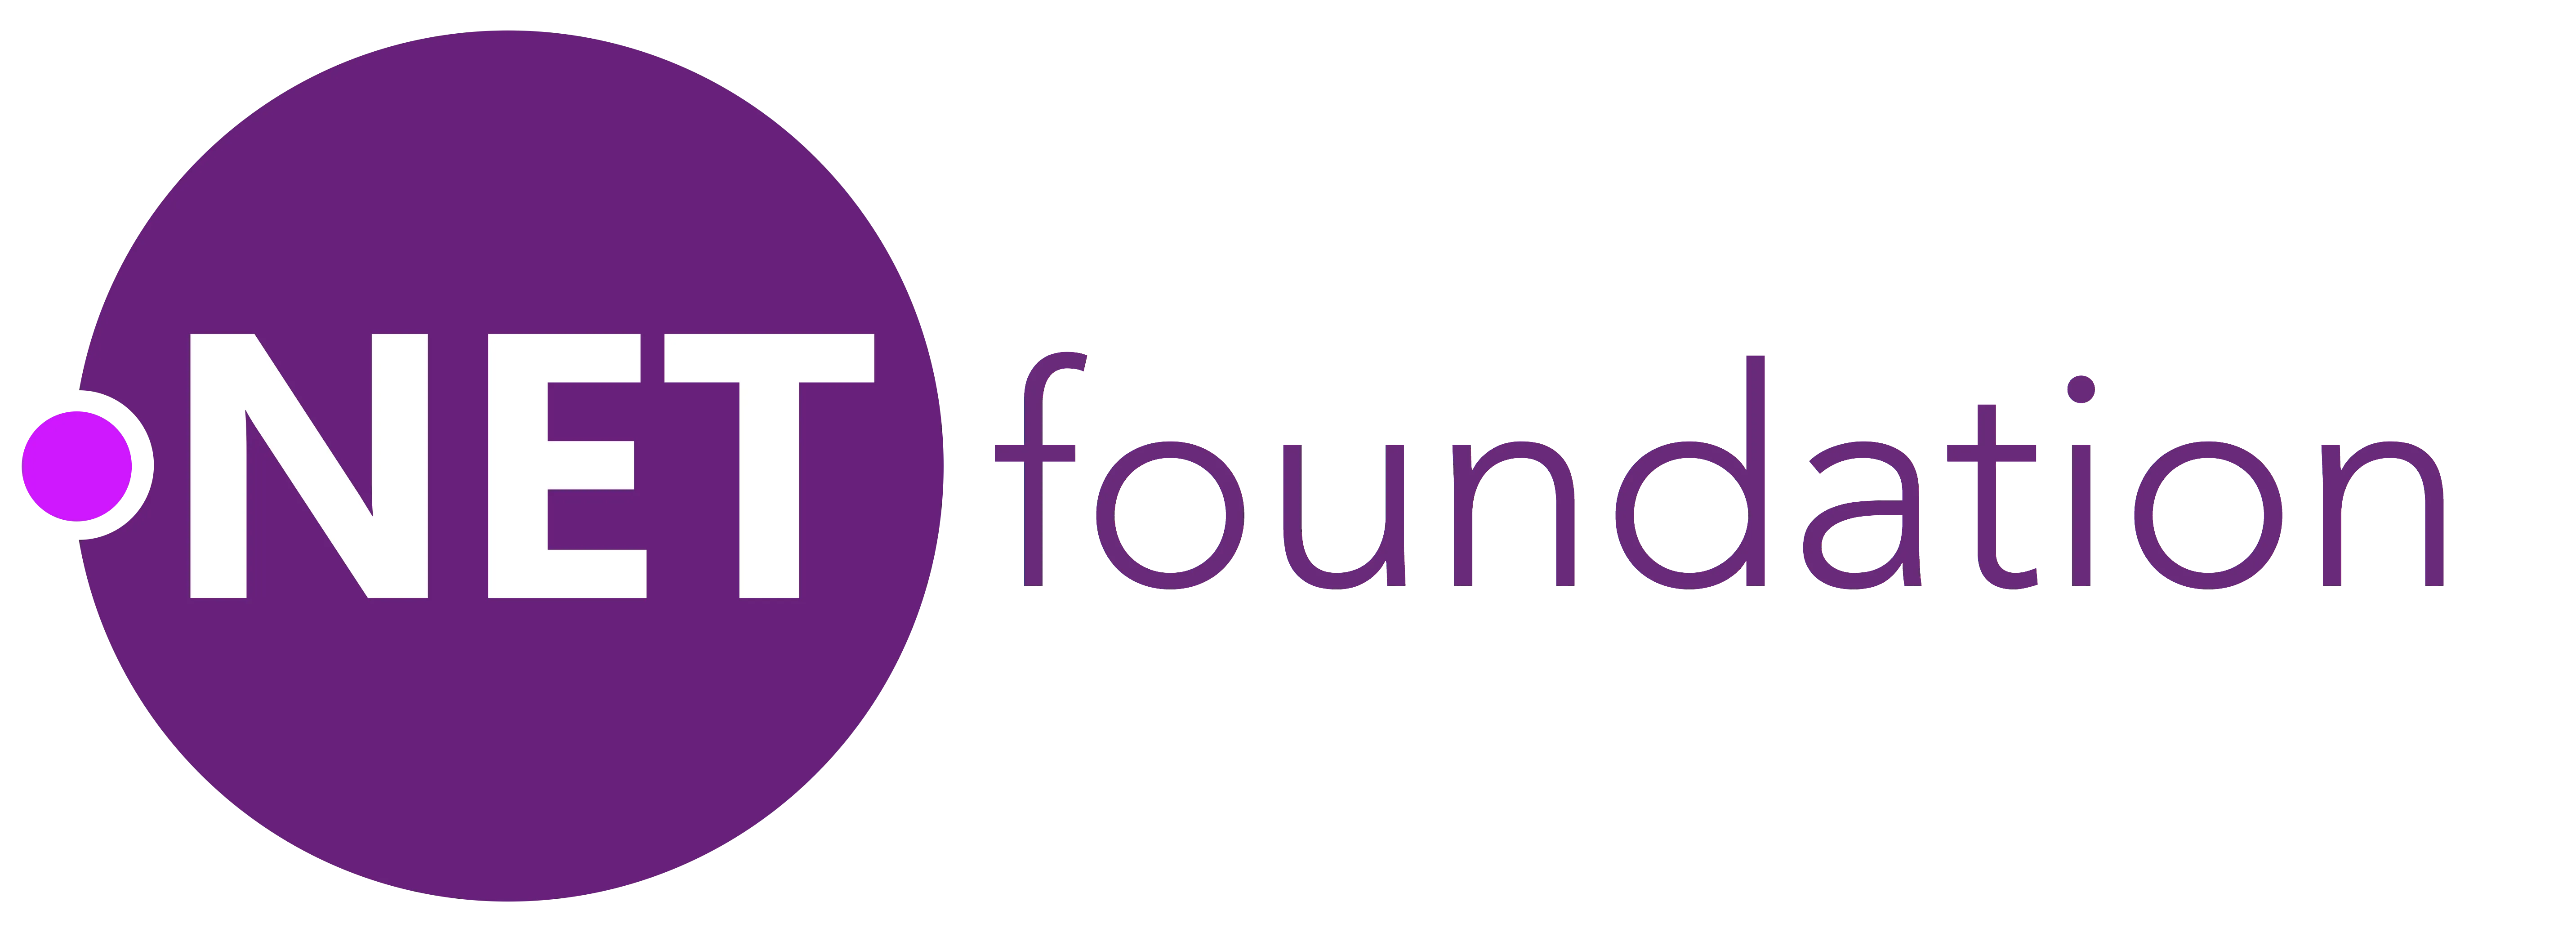 .NET Foundation logo